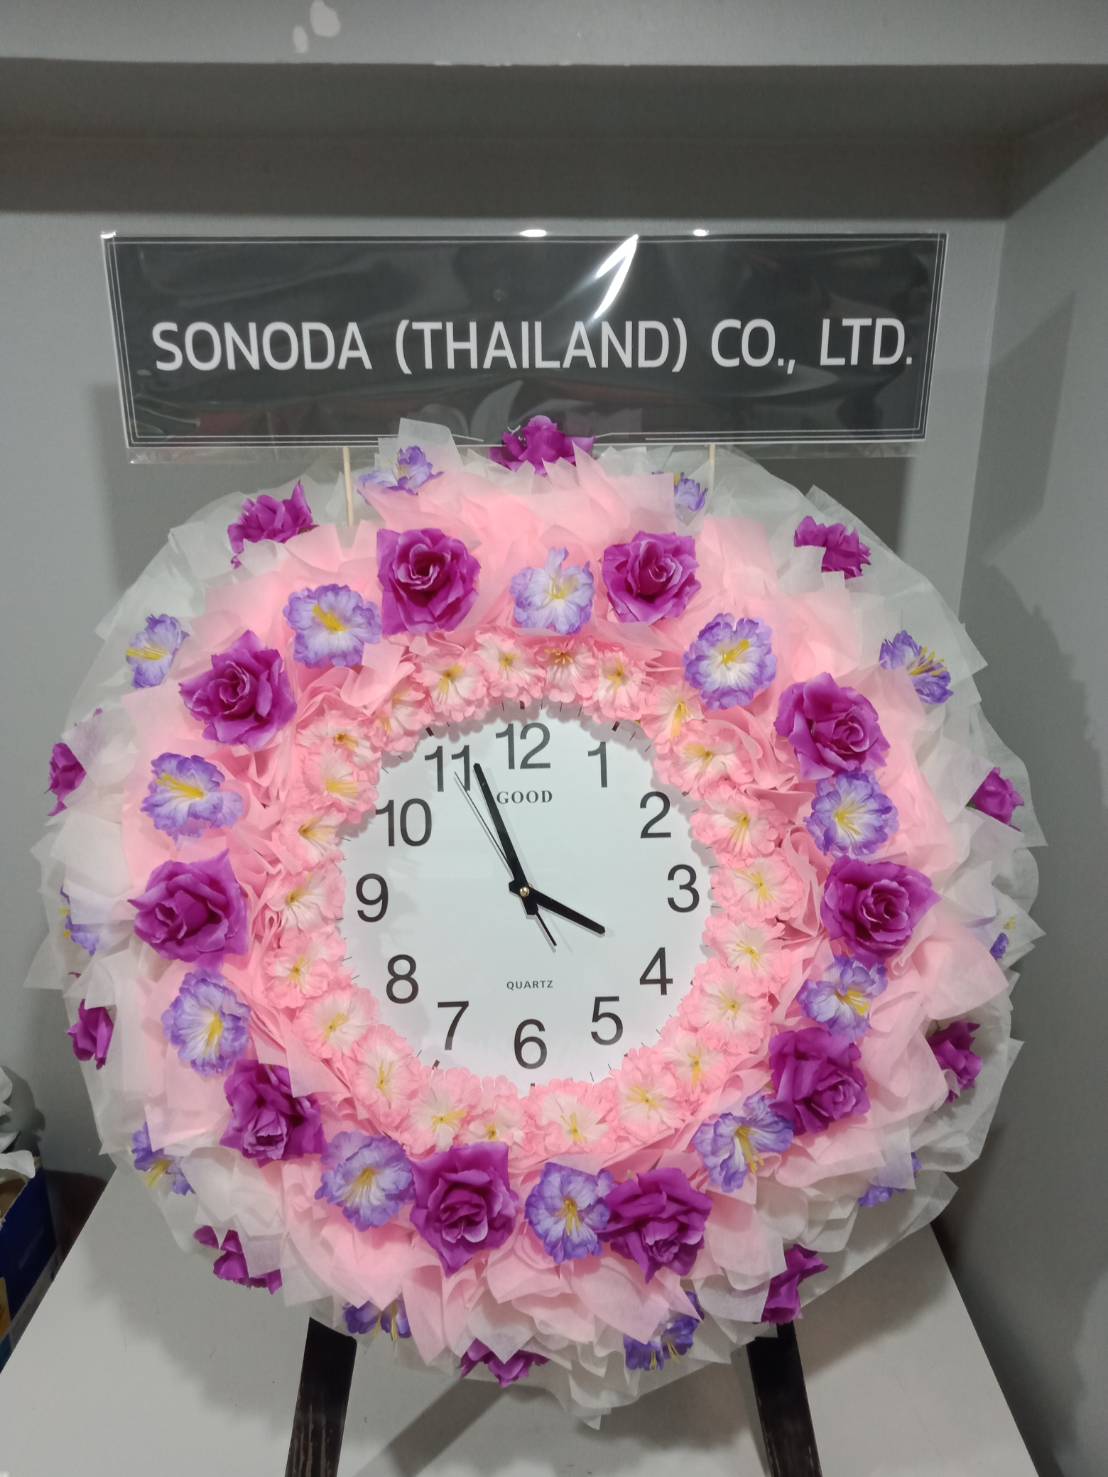 พวงหรีดนาฬิกากระดาษสา ชั้นนอกสีขาวและผ้าชั้นในสีชมพูแซมด้วยดอกไม้ประดิษฐ์สีม่วง